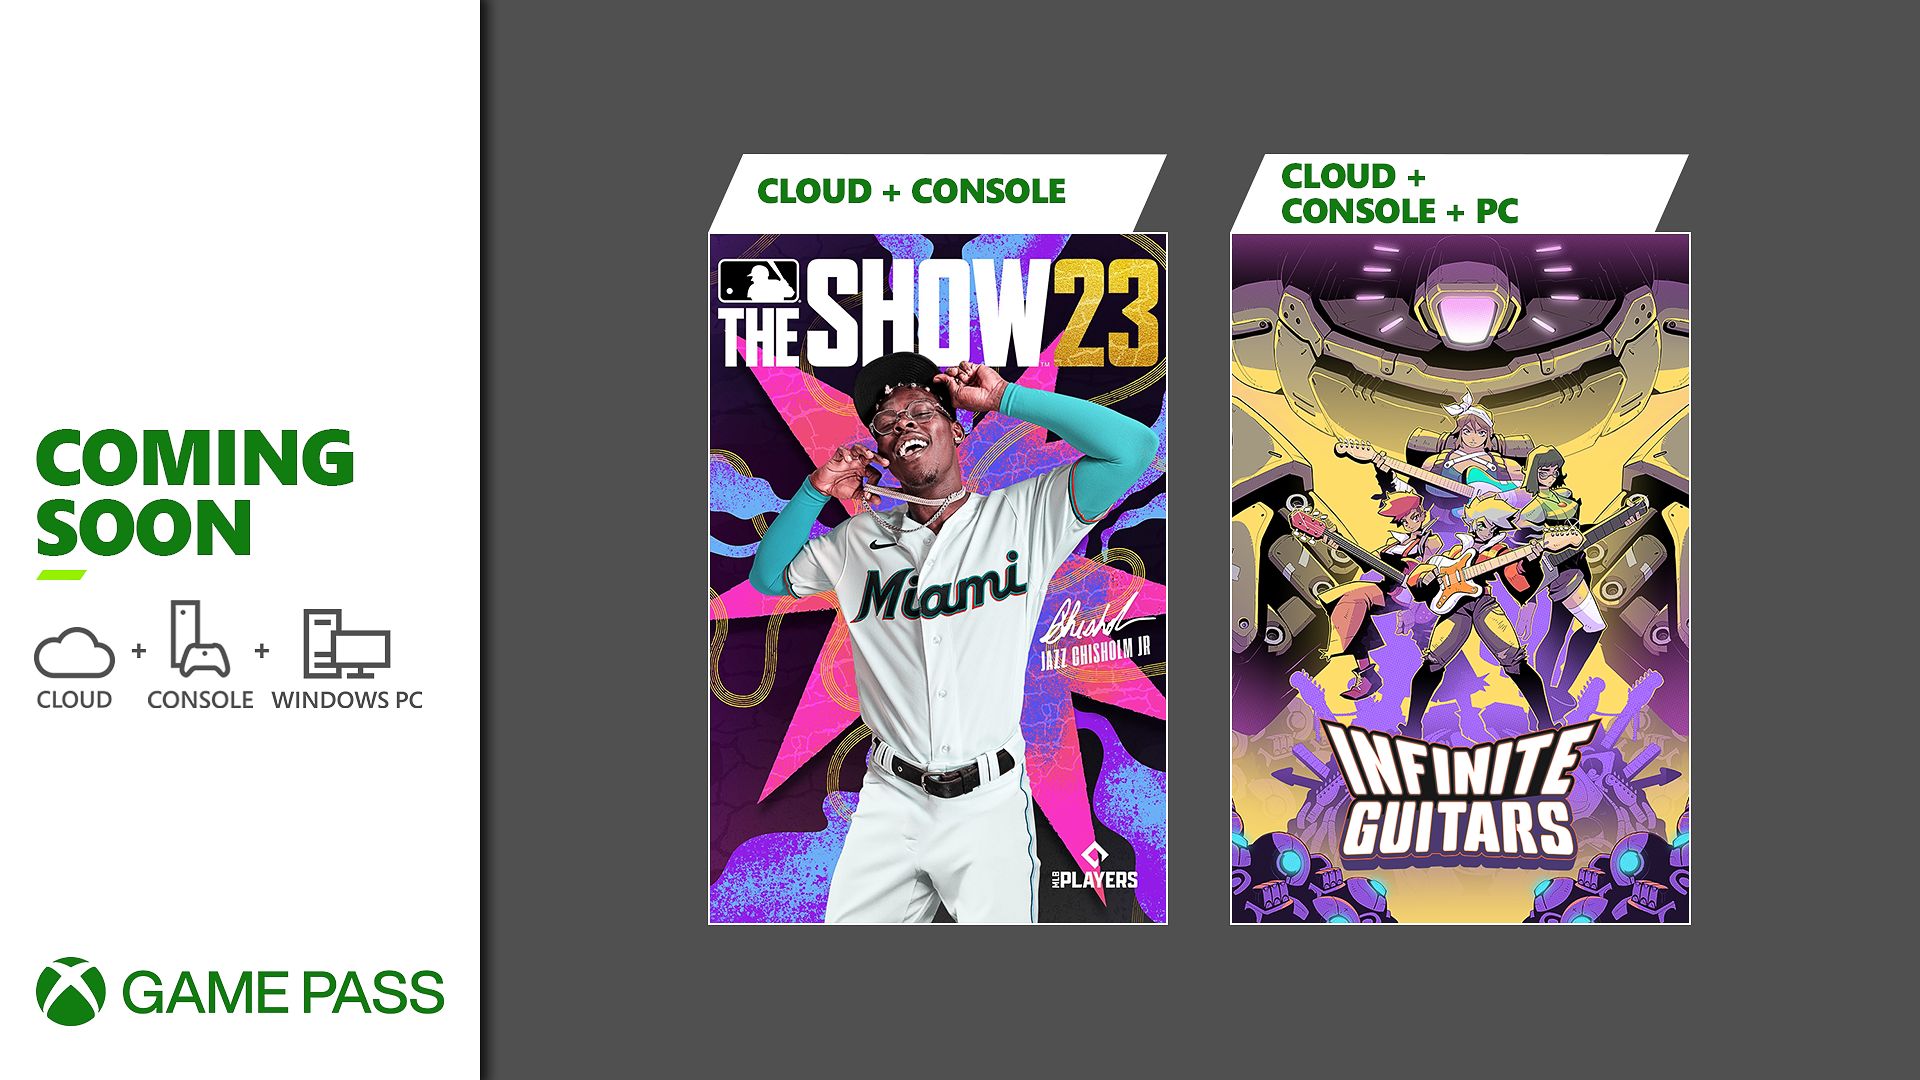 Bald im Xbox Game Pass: MLB The Show 23, Infinite Guitars und mehr